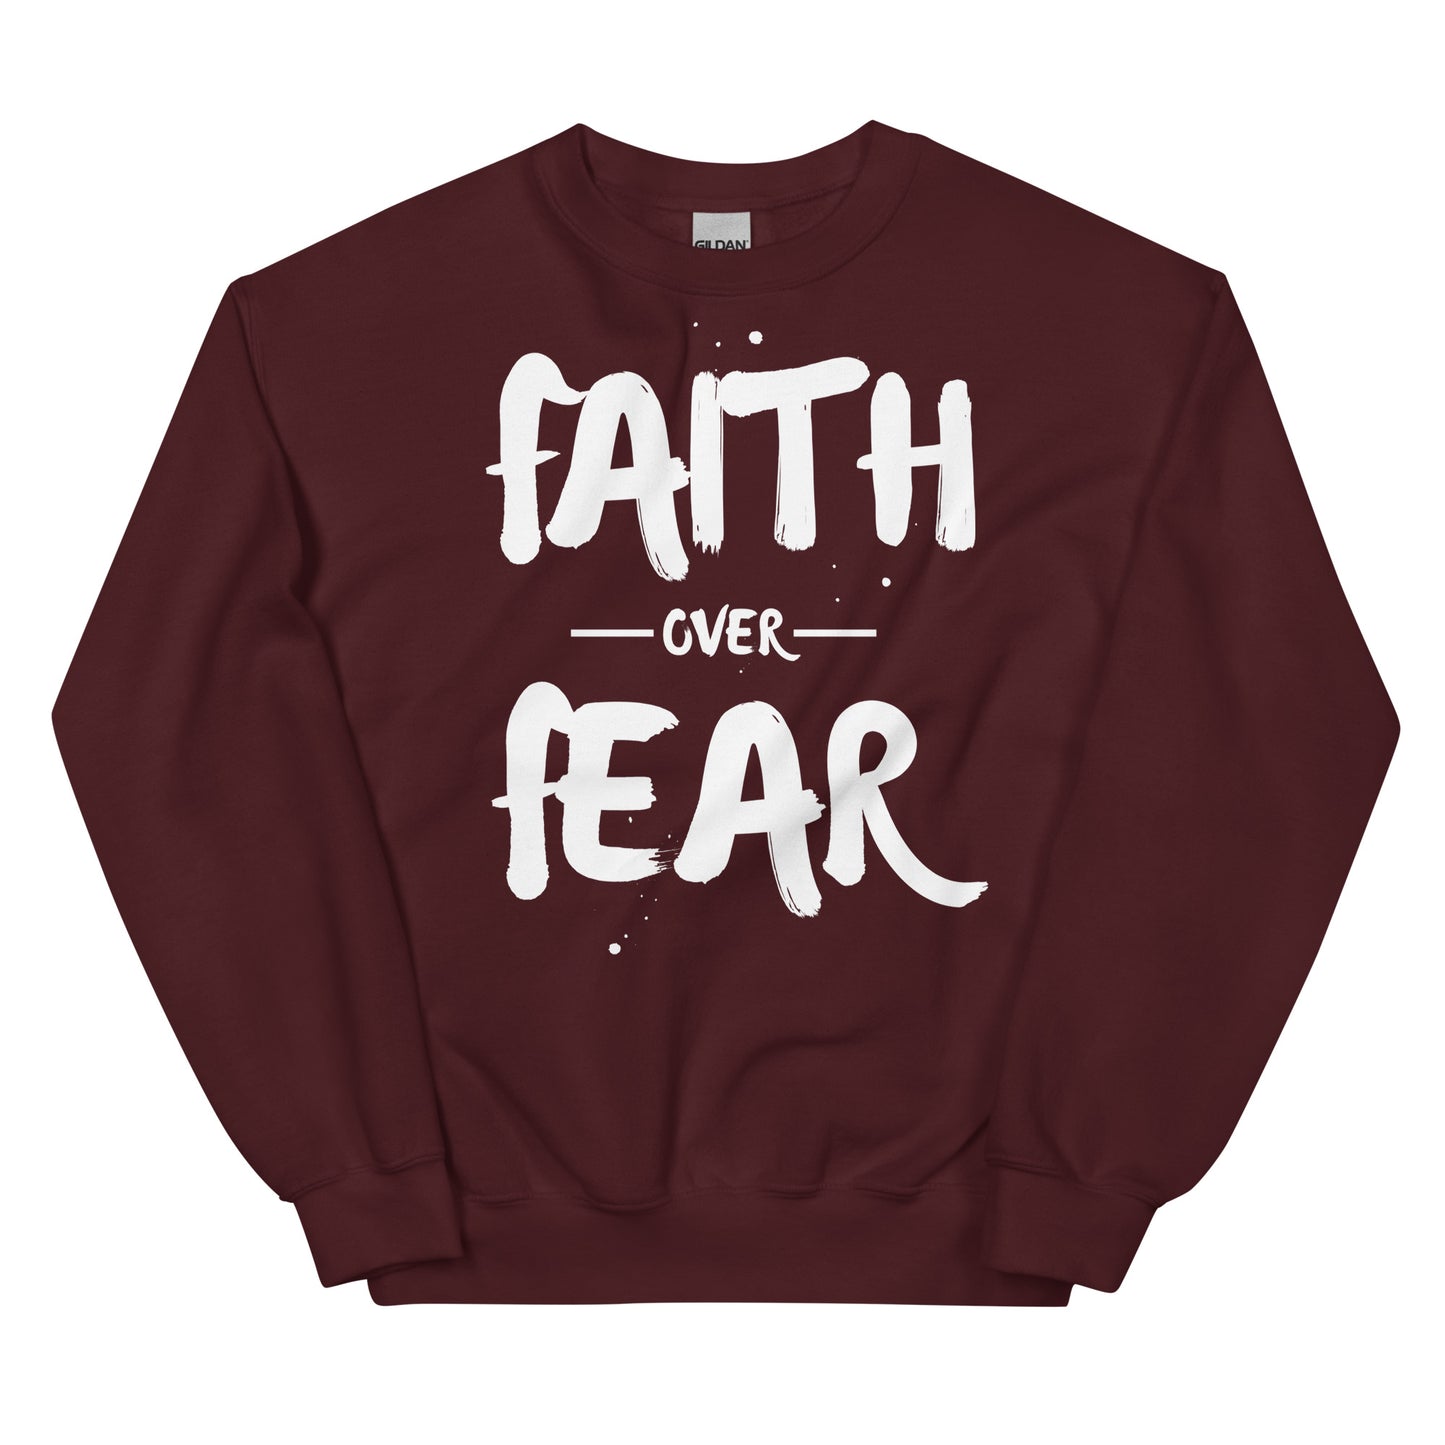 FAITH OVER FEAR SWEATSHIRT